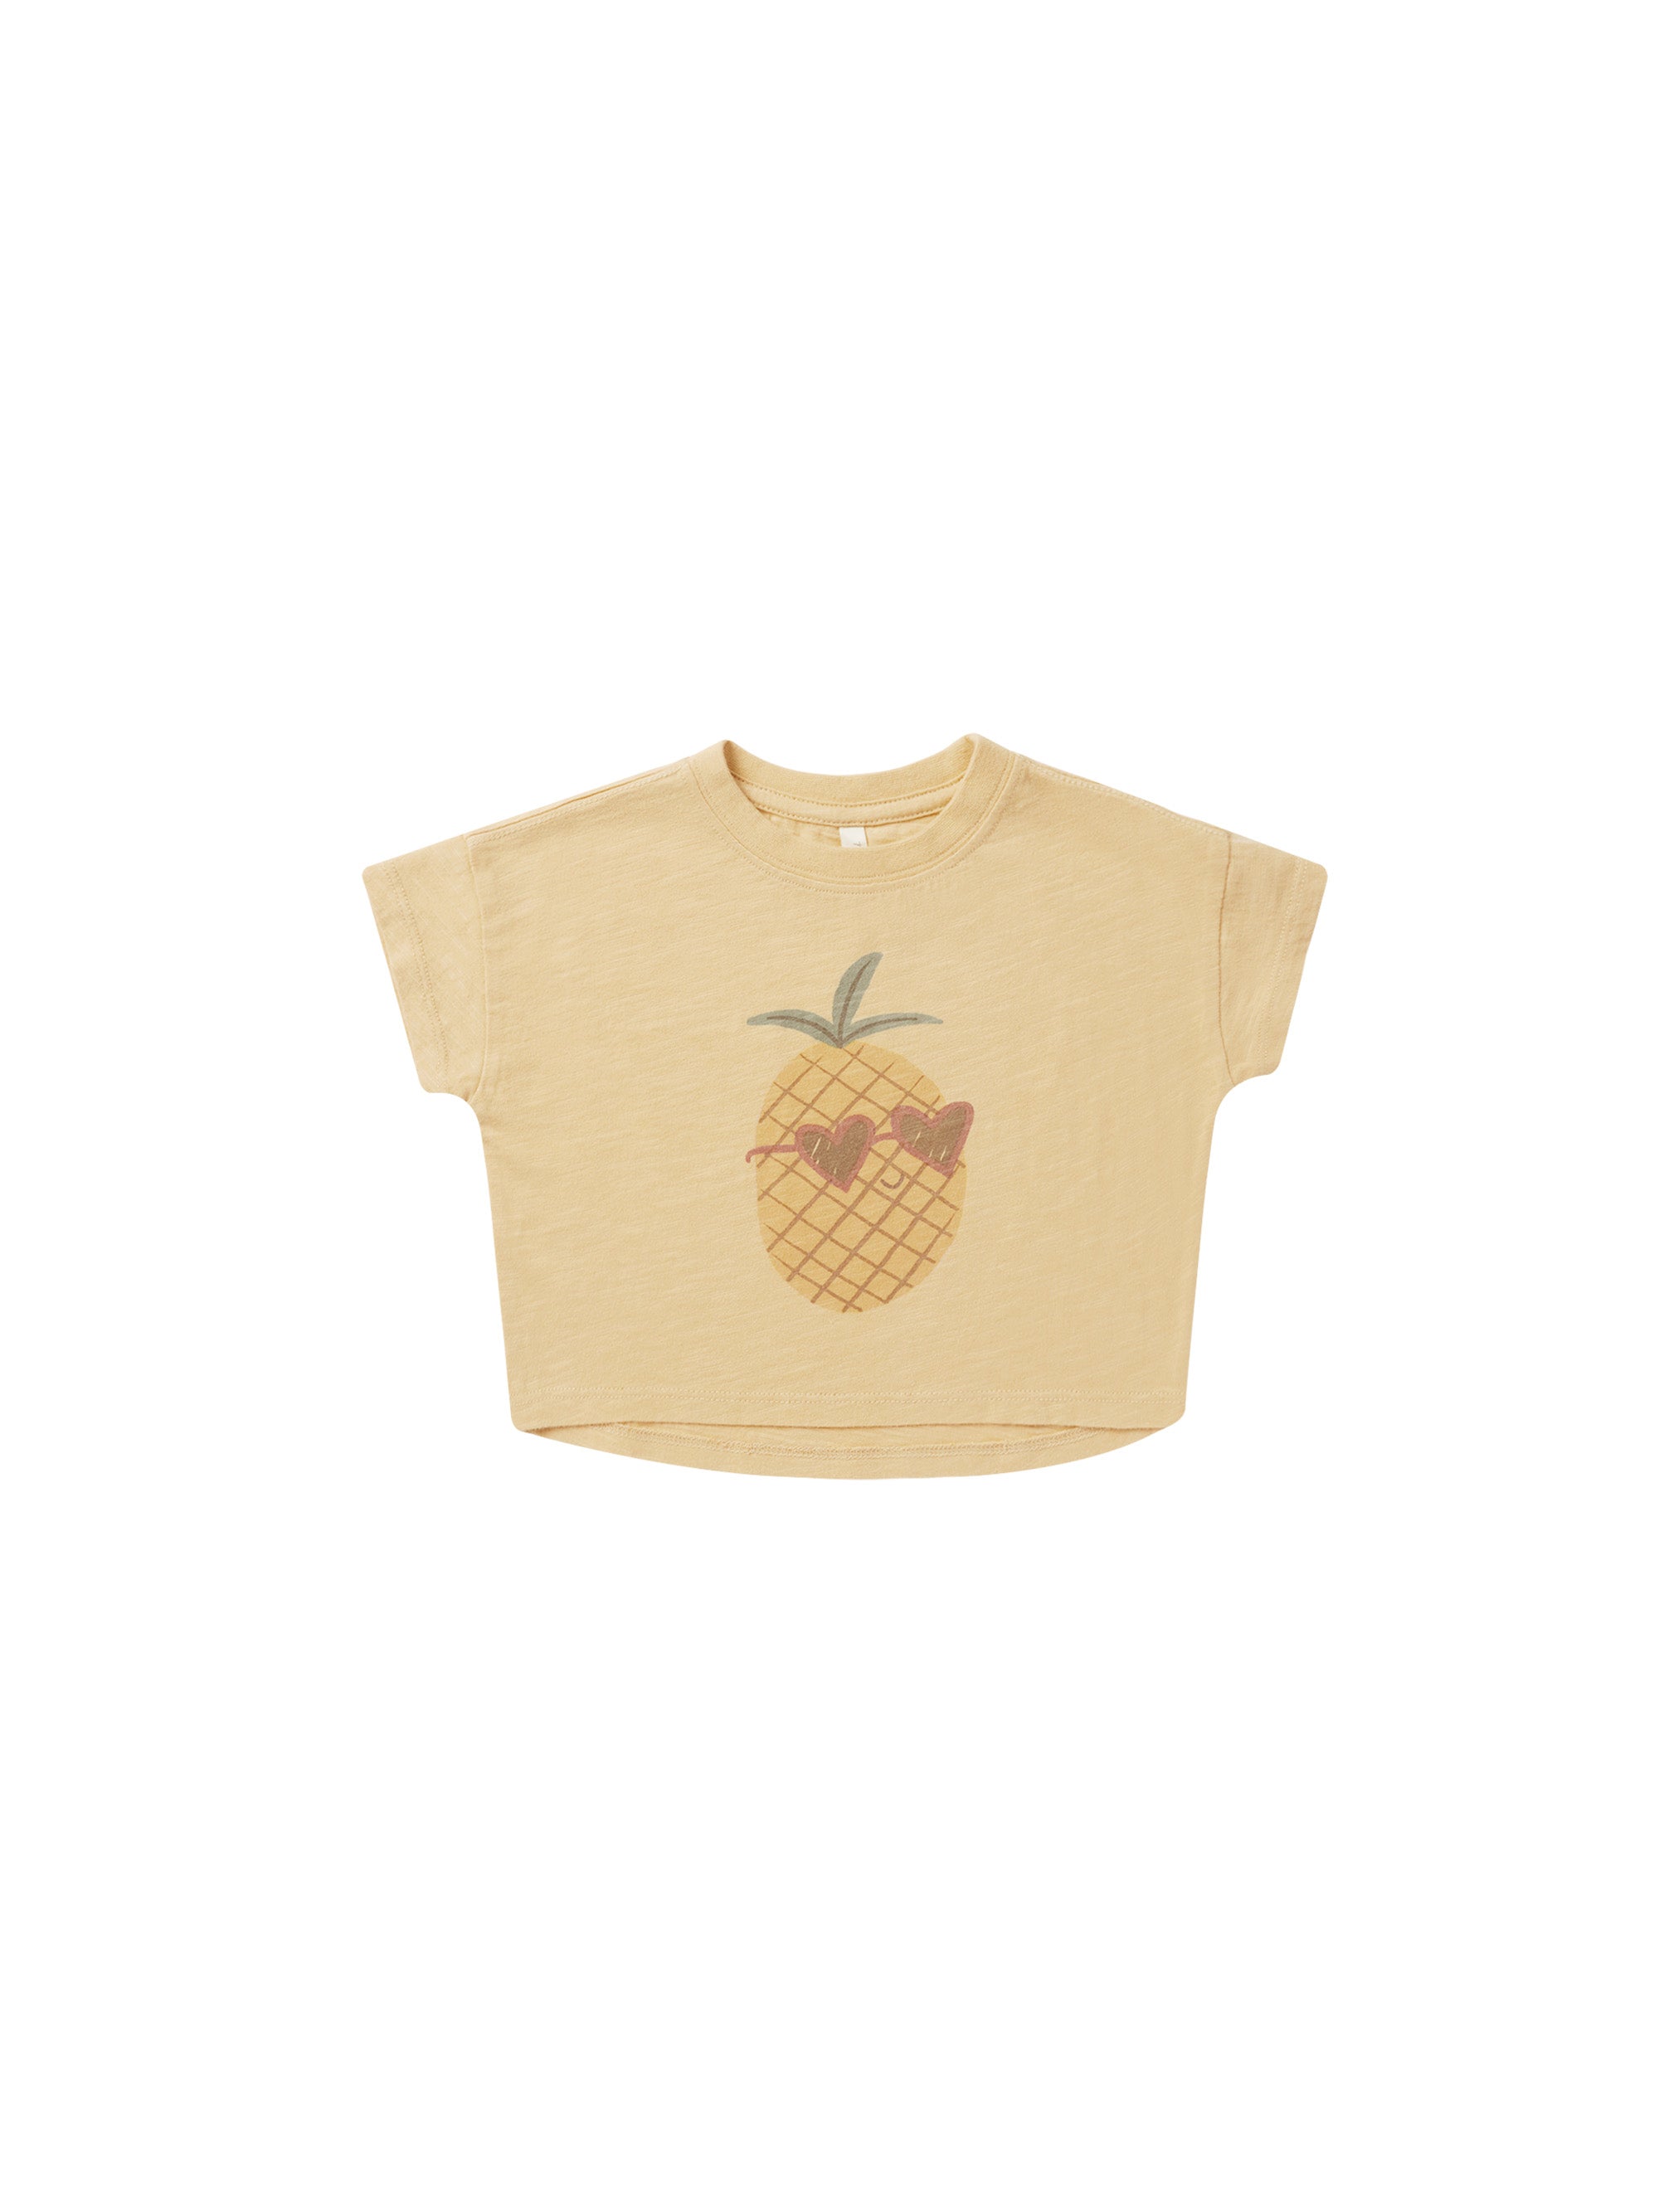 Boxy Tee - Pineapple - Twinkle Twinkle Little One